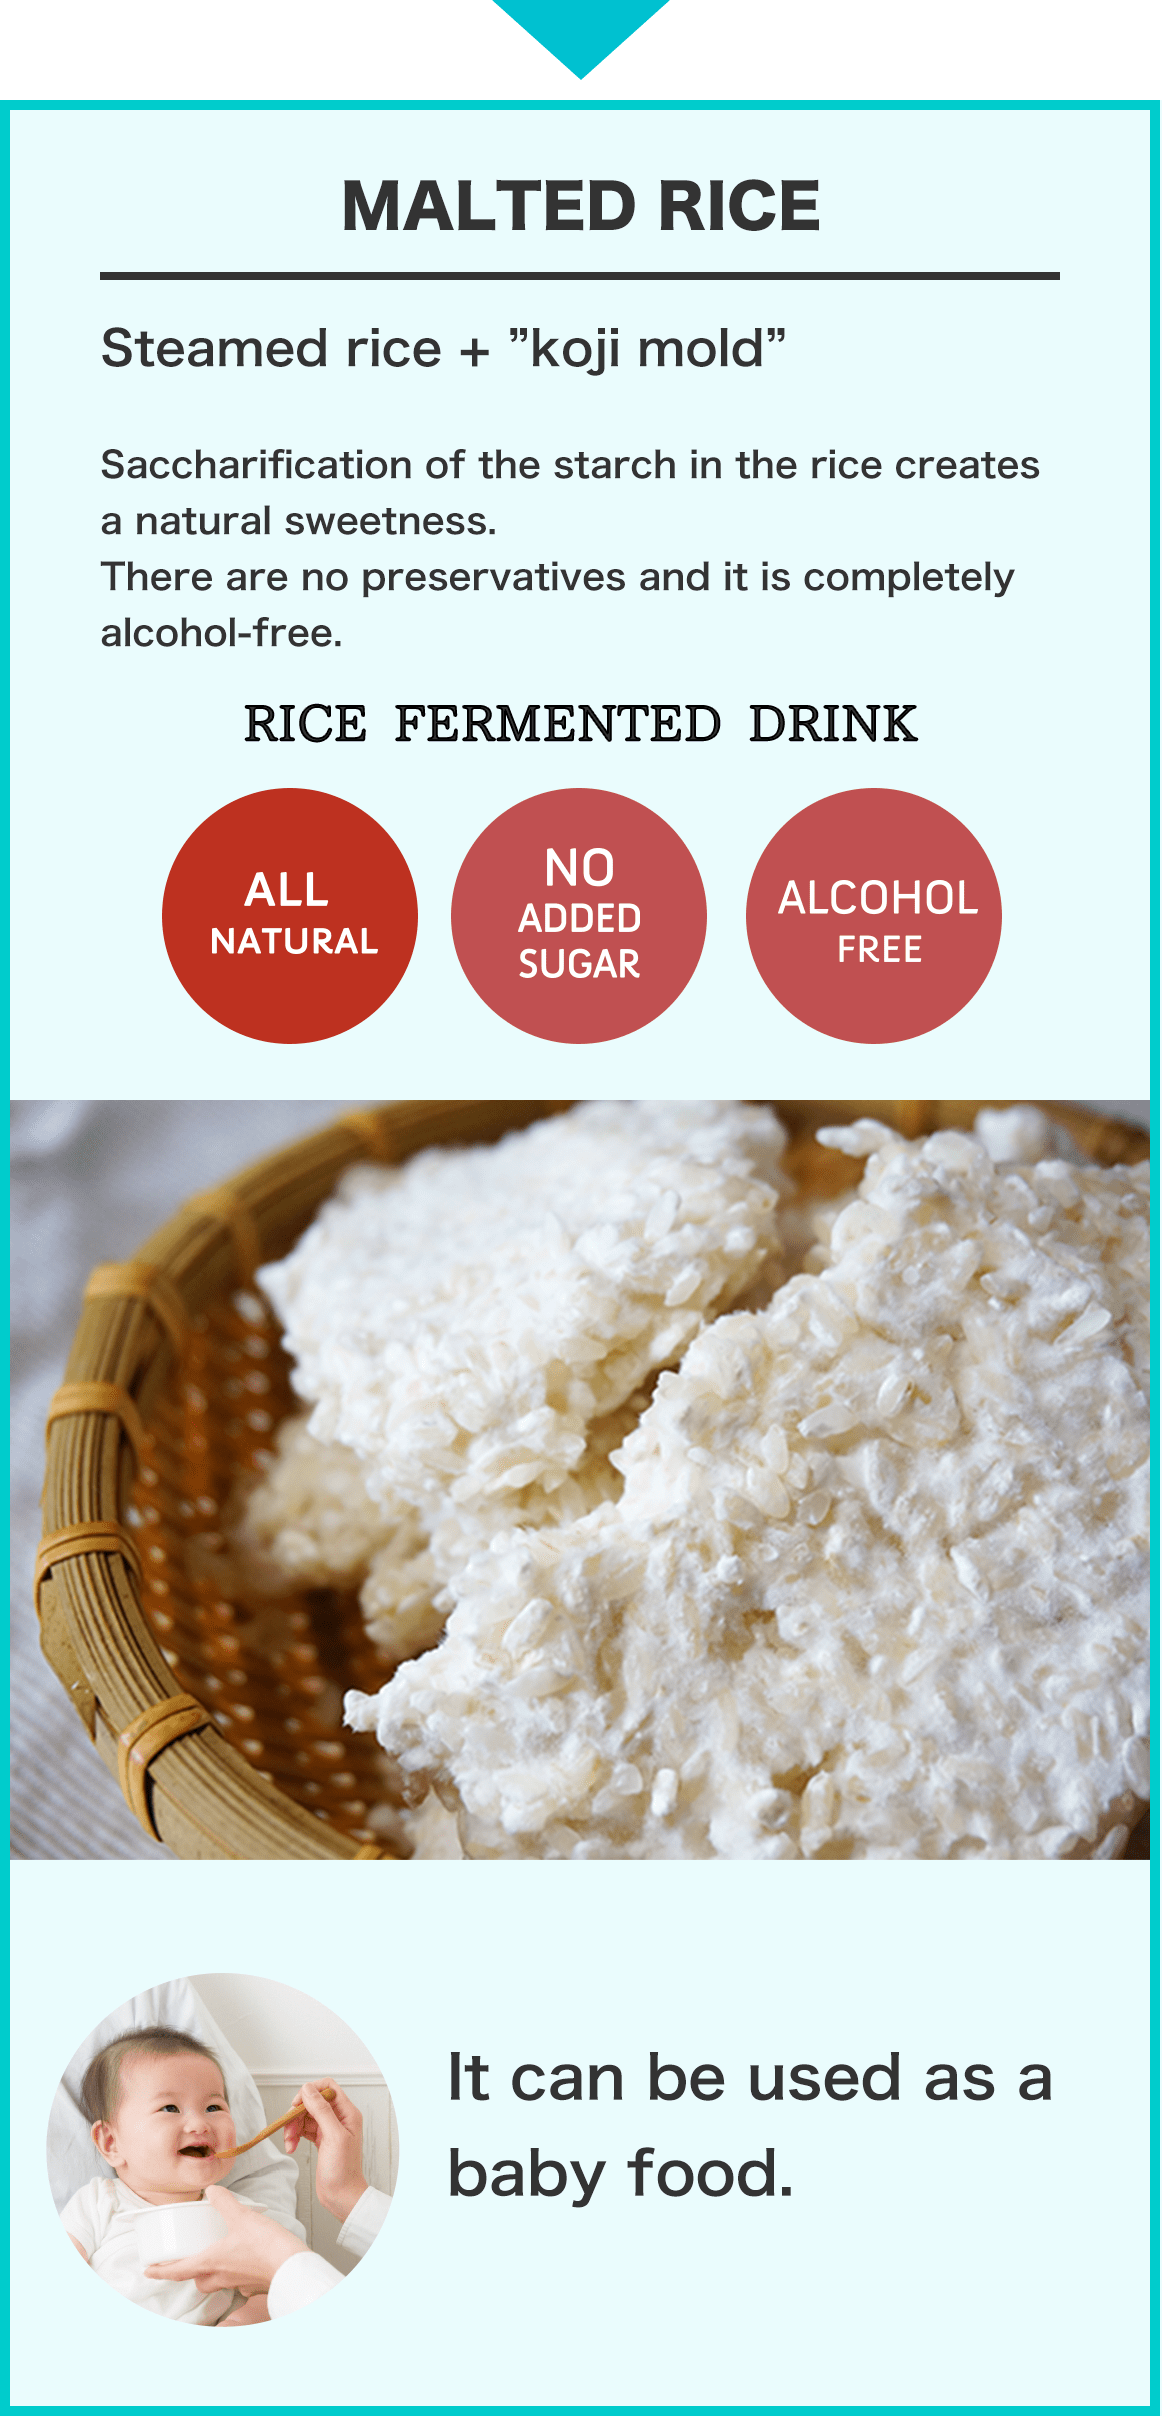 米糀（こめこうじ）から 蒸したお米 +「糀菌」米糀は、蒸したお米に「糀菌」を加え、発酵させたものです。米の中のデンプンが糖化して、自然な甘みを作りだします。 「お米のヒミツ☆」は合成添加物０ 砂糖・甘味料０ アルコール０ 赤ちゃんや妊婦さんも安心して飲むことができます。